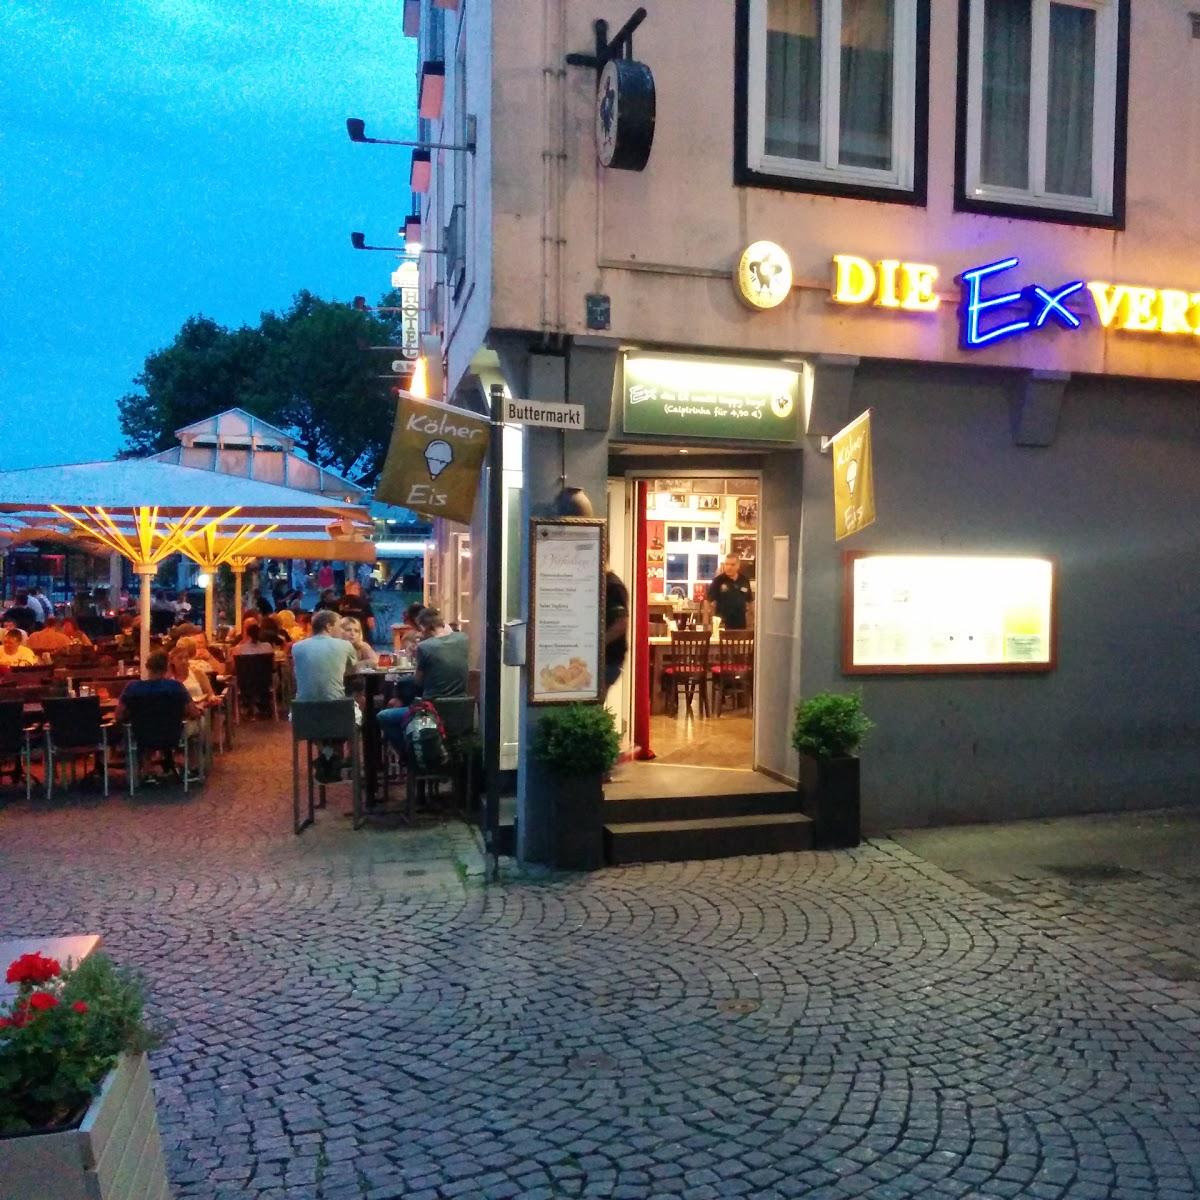 Restaurant "Ex-Vertretung" in Köln